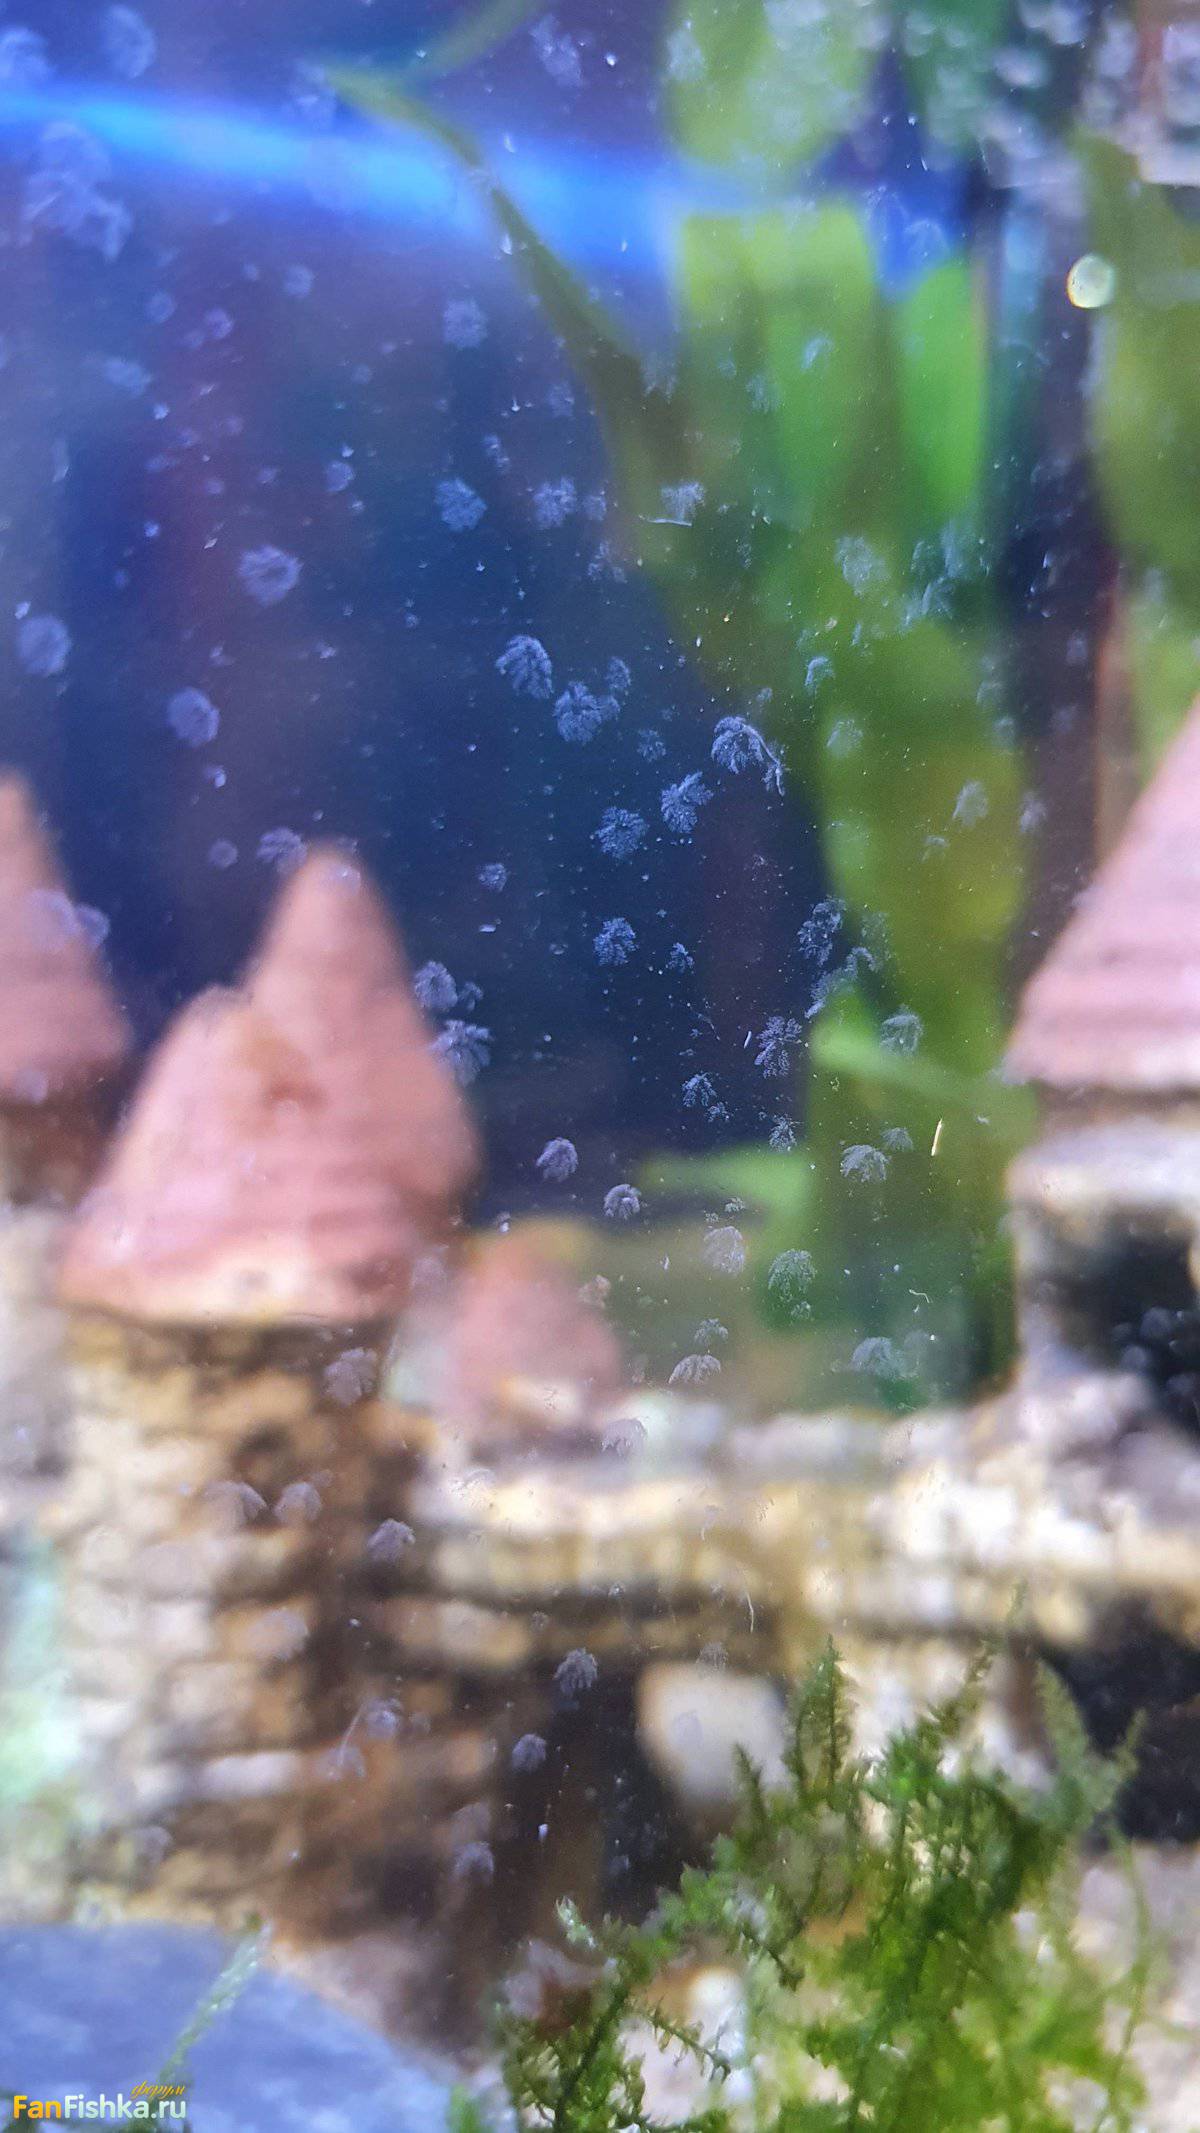 Маленькие зеленые точки на стенках аквариума